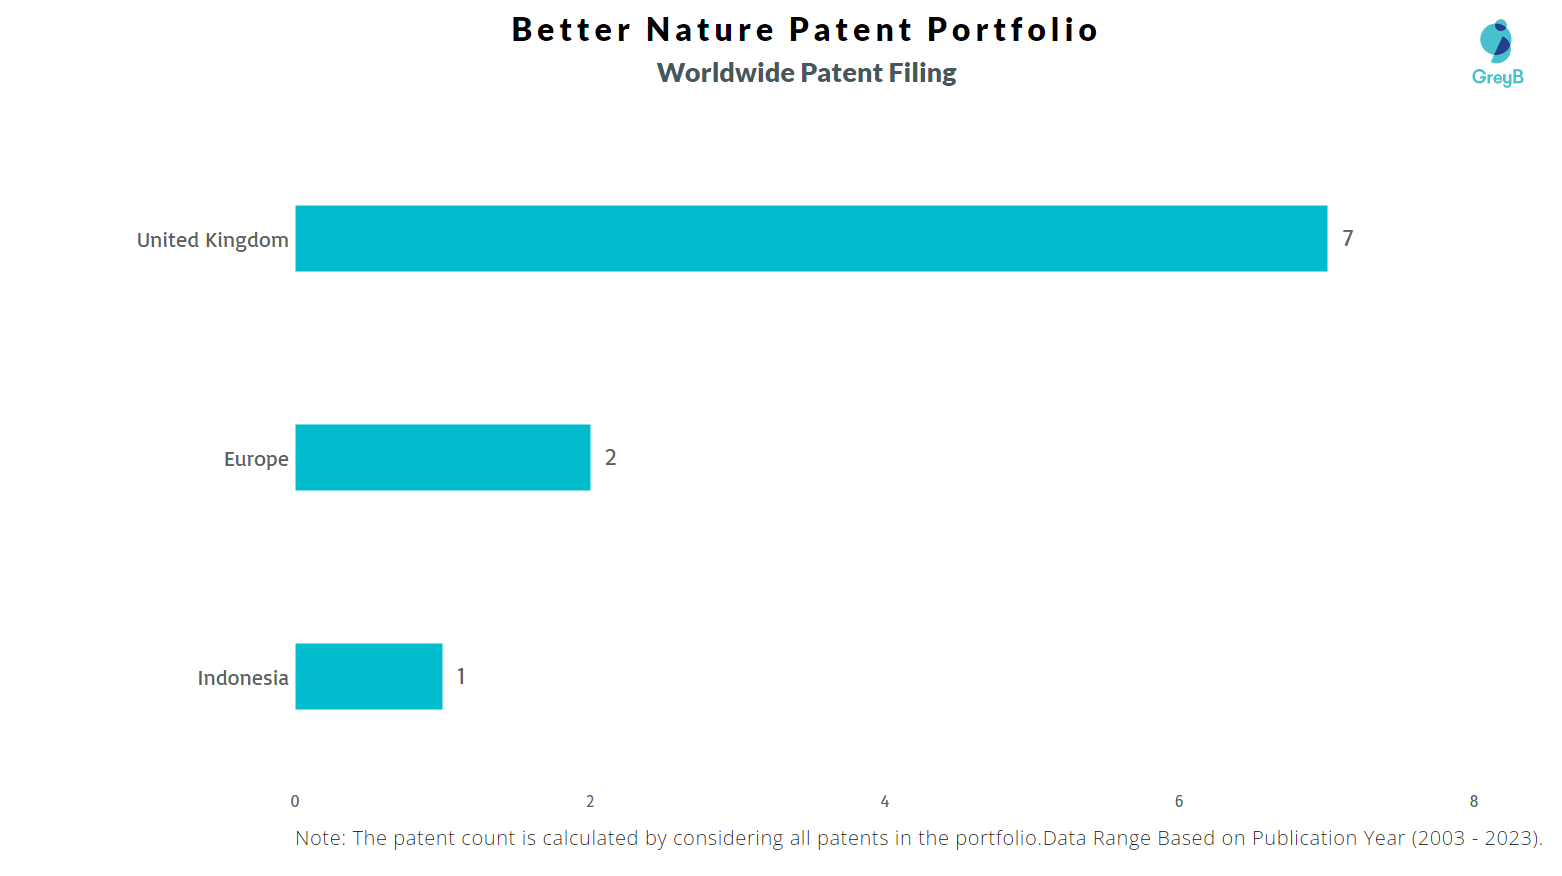 Better Nature Worldwide Patents